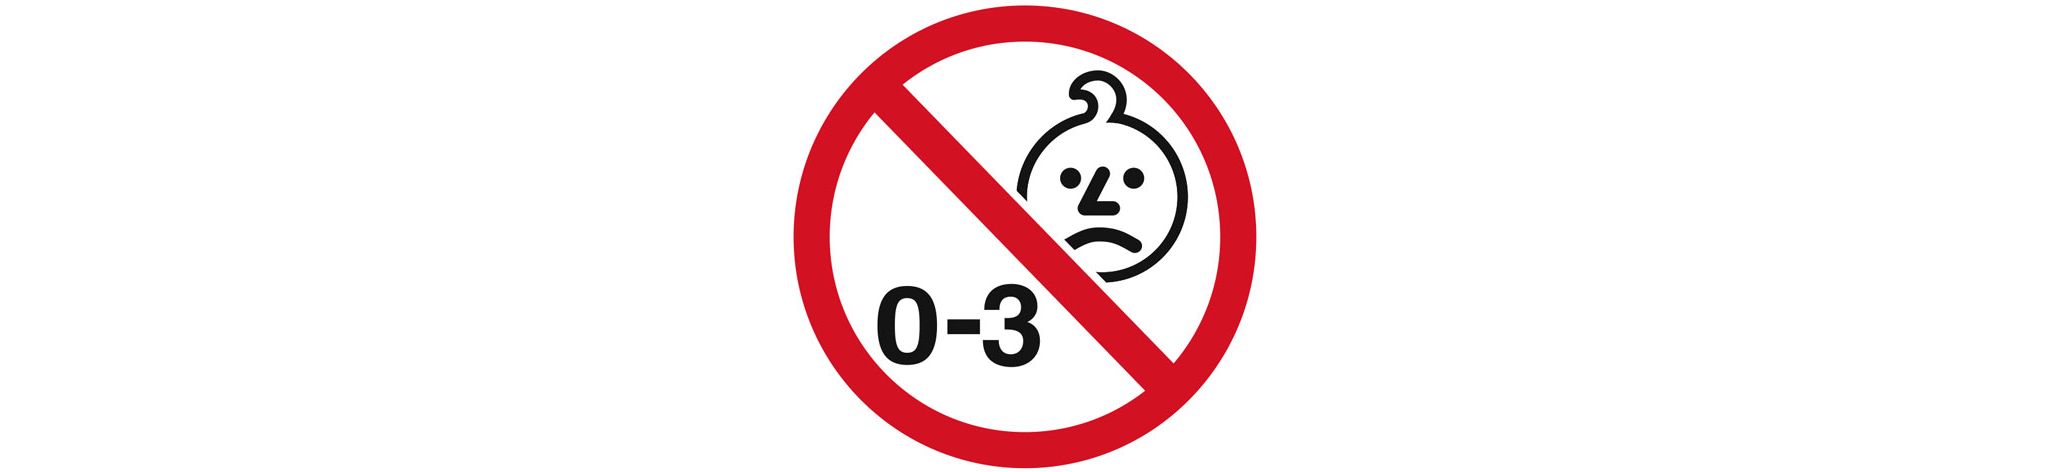 00 003. Знак 0-3. Запрещено детям до 3 лет. Знак до 3 лет запрещено. Детям до трех лет запрещено значок.